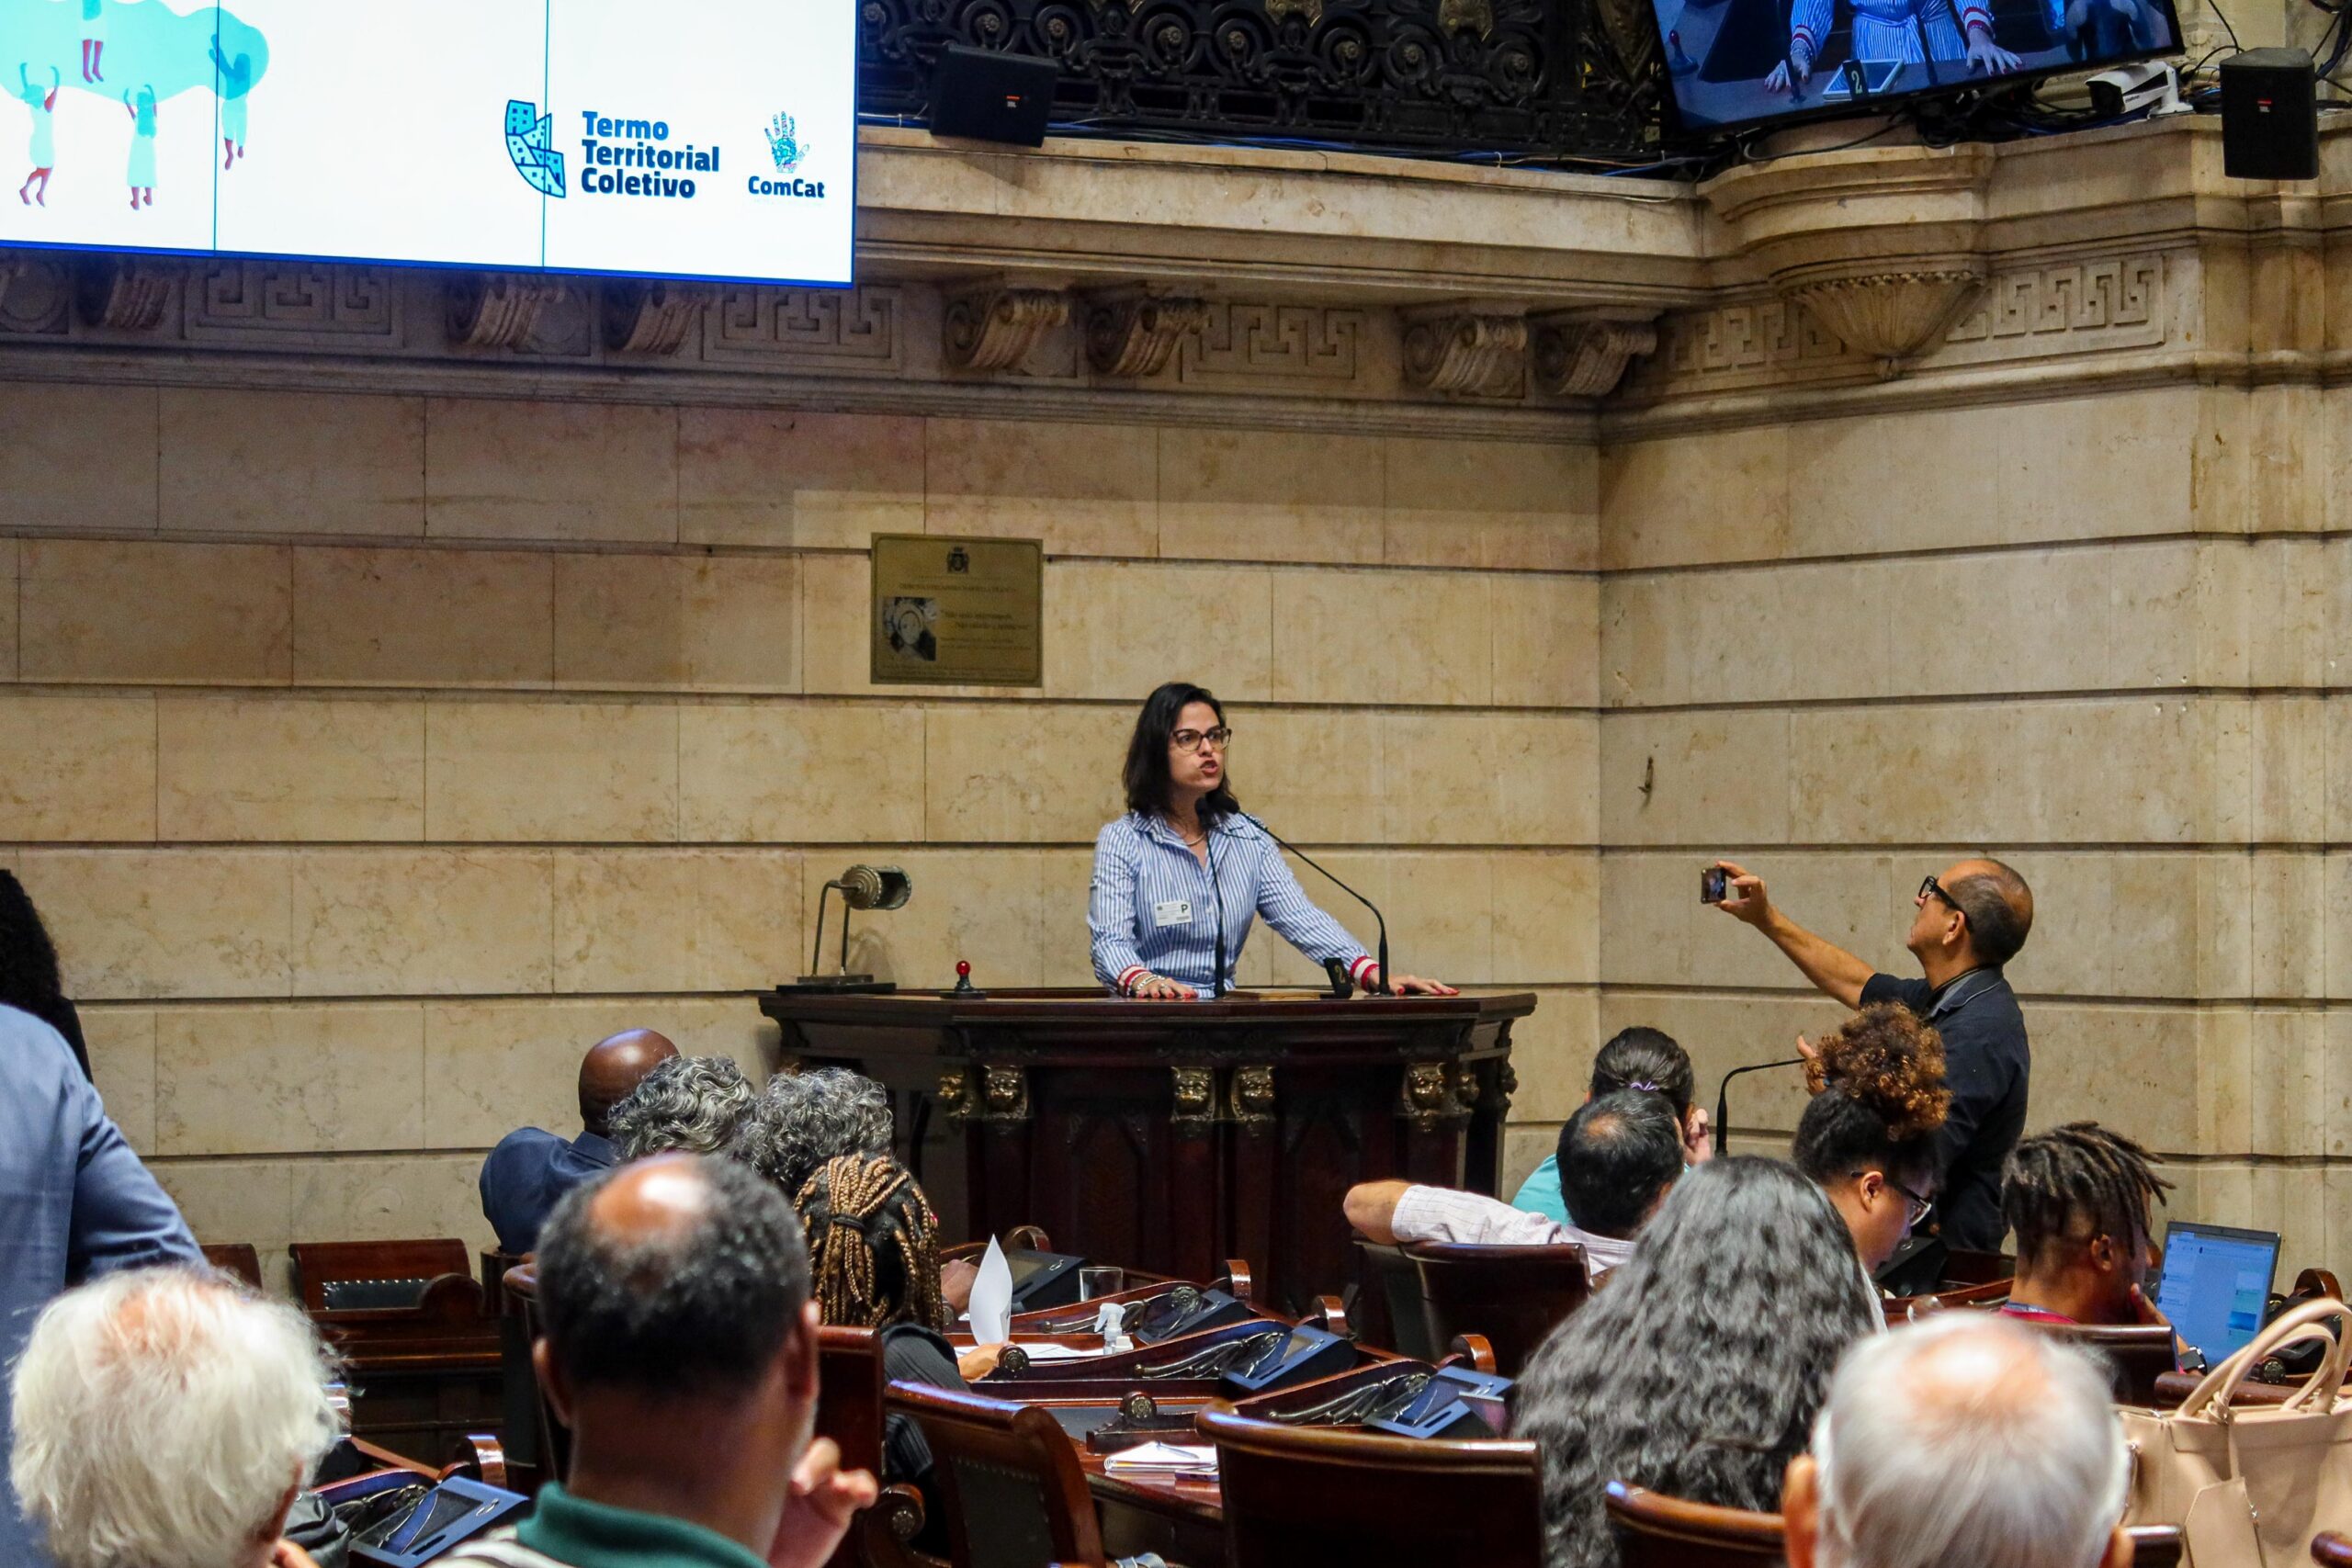 Tarcyla Fidalgo, coordenadora do Projeto TTC, critica a retirada de um capítulo inteiro sobre o Termo Territorial Coletivo do Plano Diretor e a falta de transparência por parte da Prefeitura.